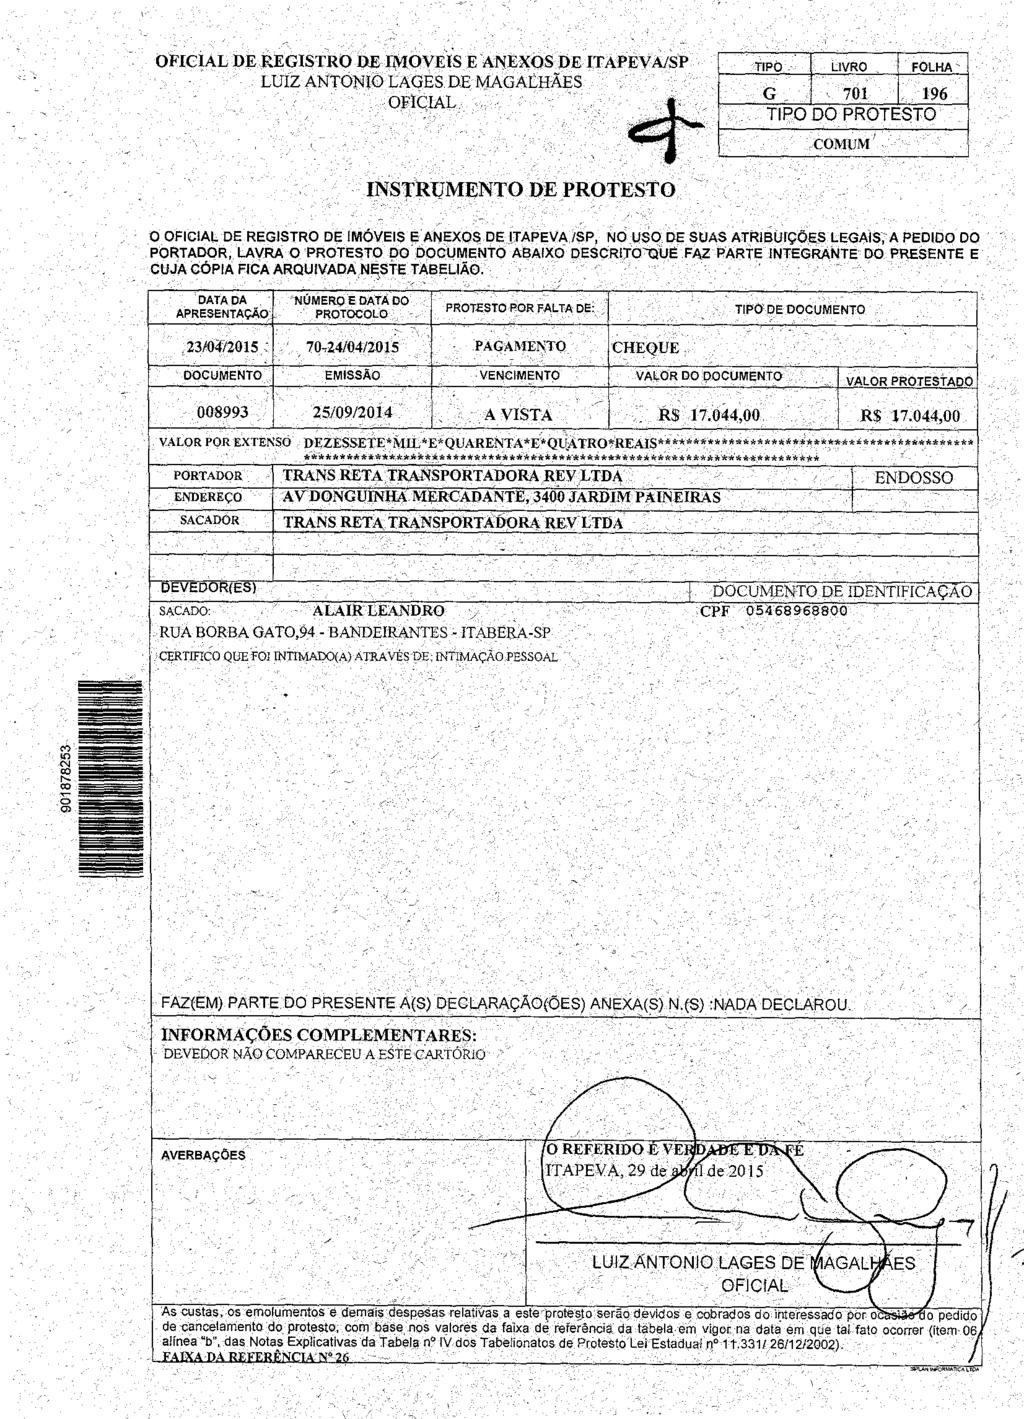 fls. 18 Este documento é cópia do original, assinado digitalmente por EDUARDO DAINEZI FERNANDES e Tribunal de Justica Sao Paulo, protocolado em 20/08/2015 às 15:55, sob o número